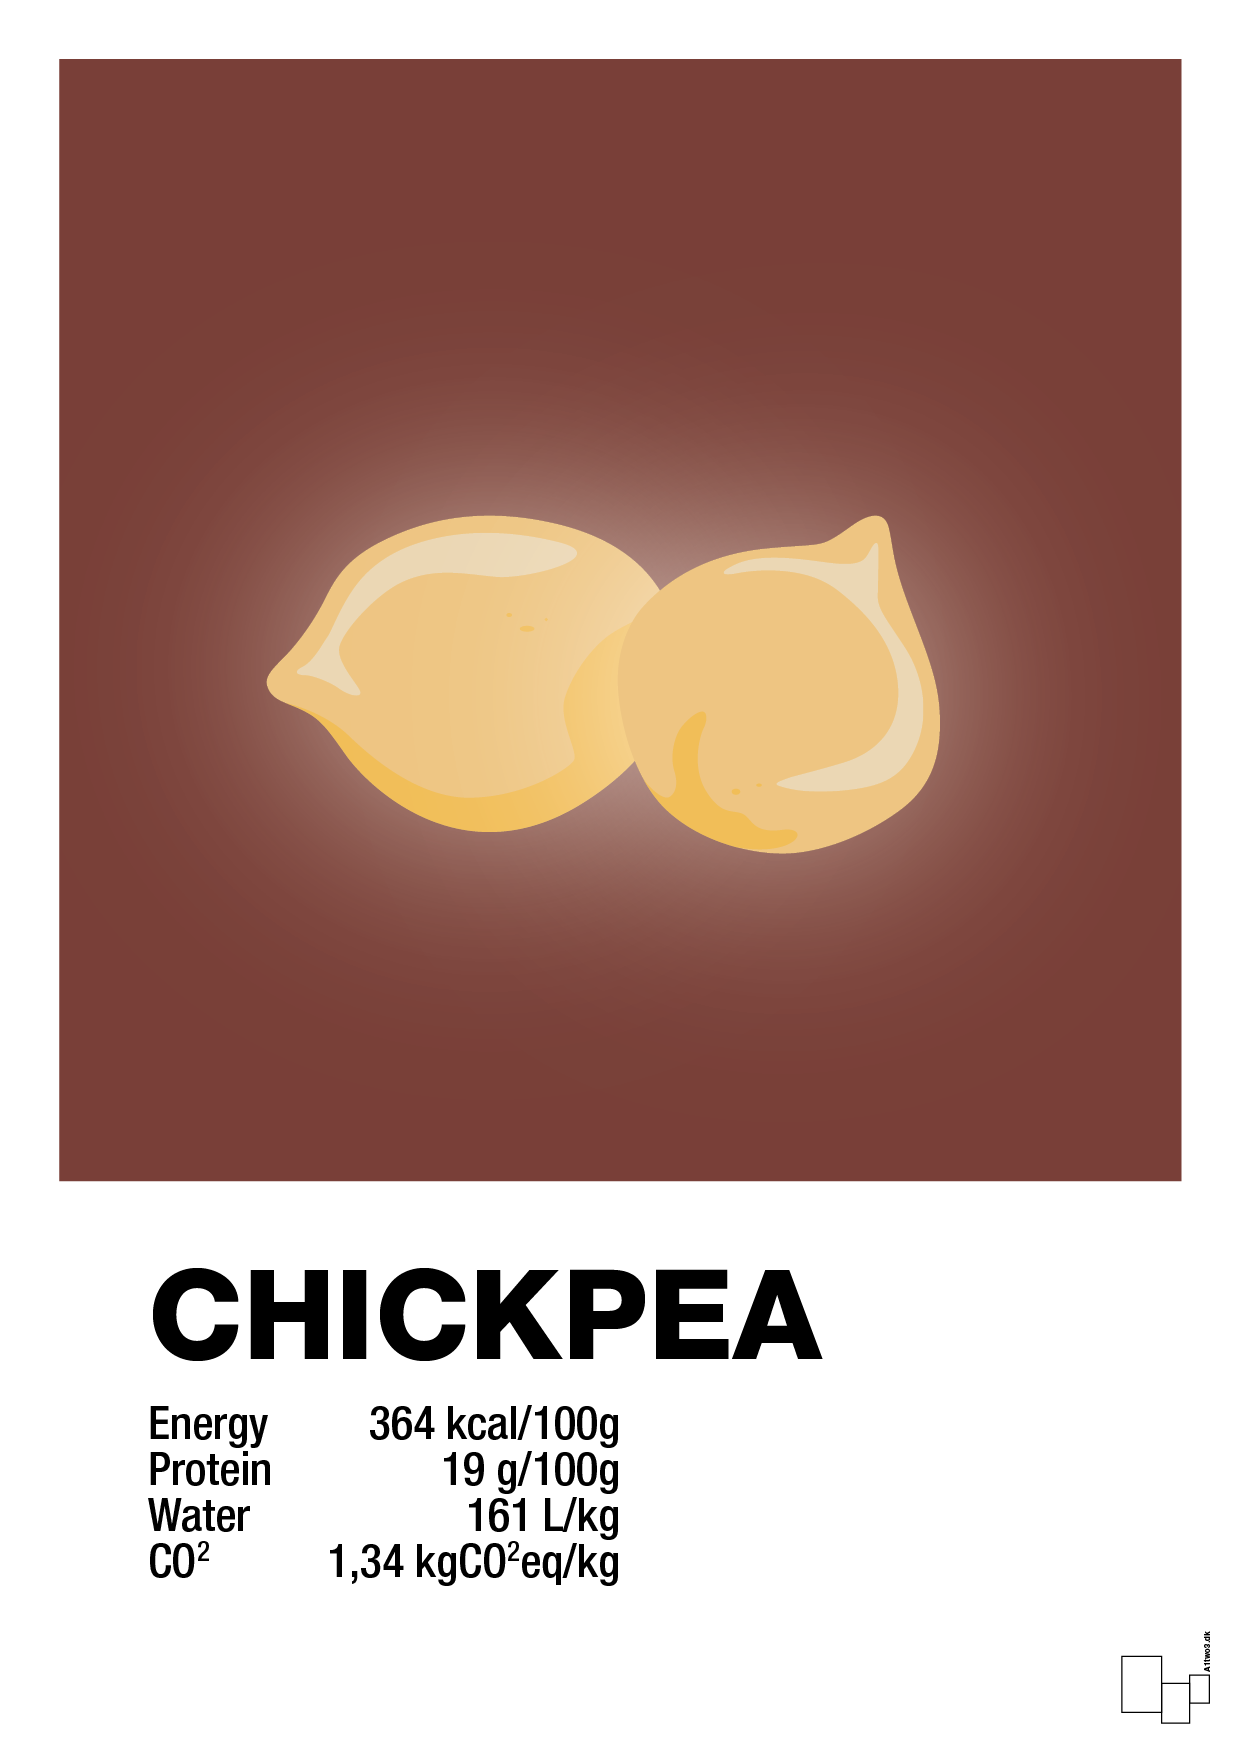 chickpeas nutrition og miljø - Plakat med Mad & Drikke i Red Pepper